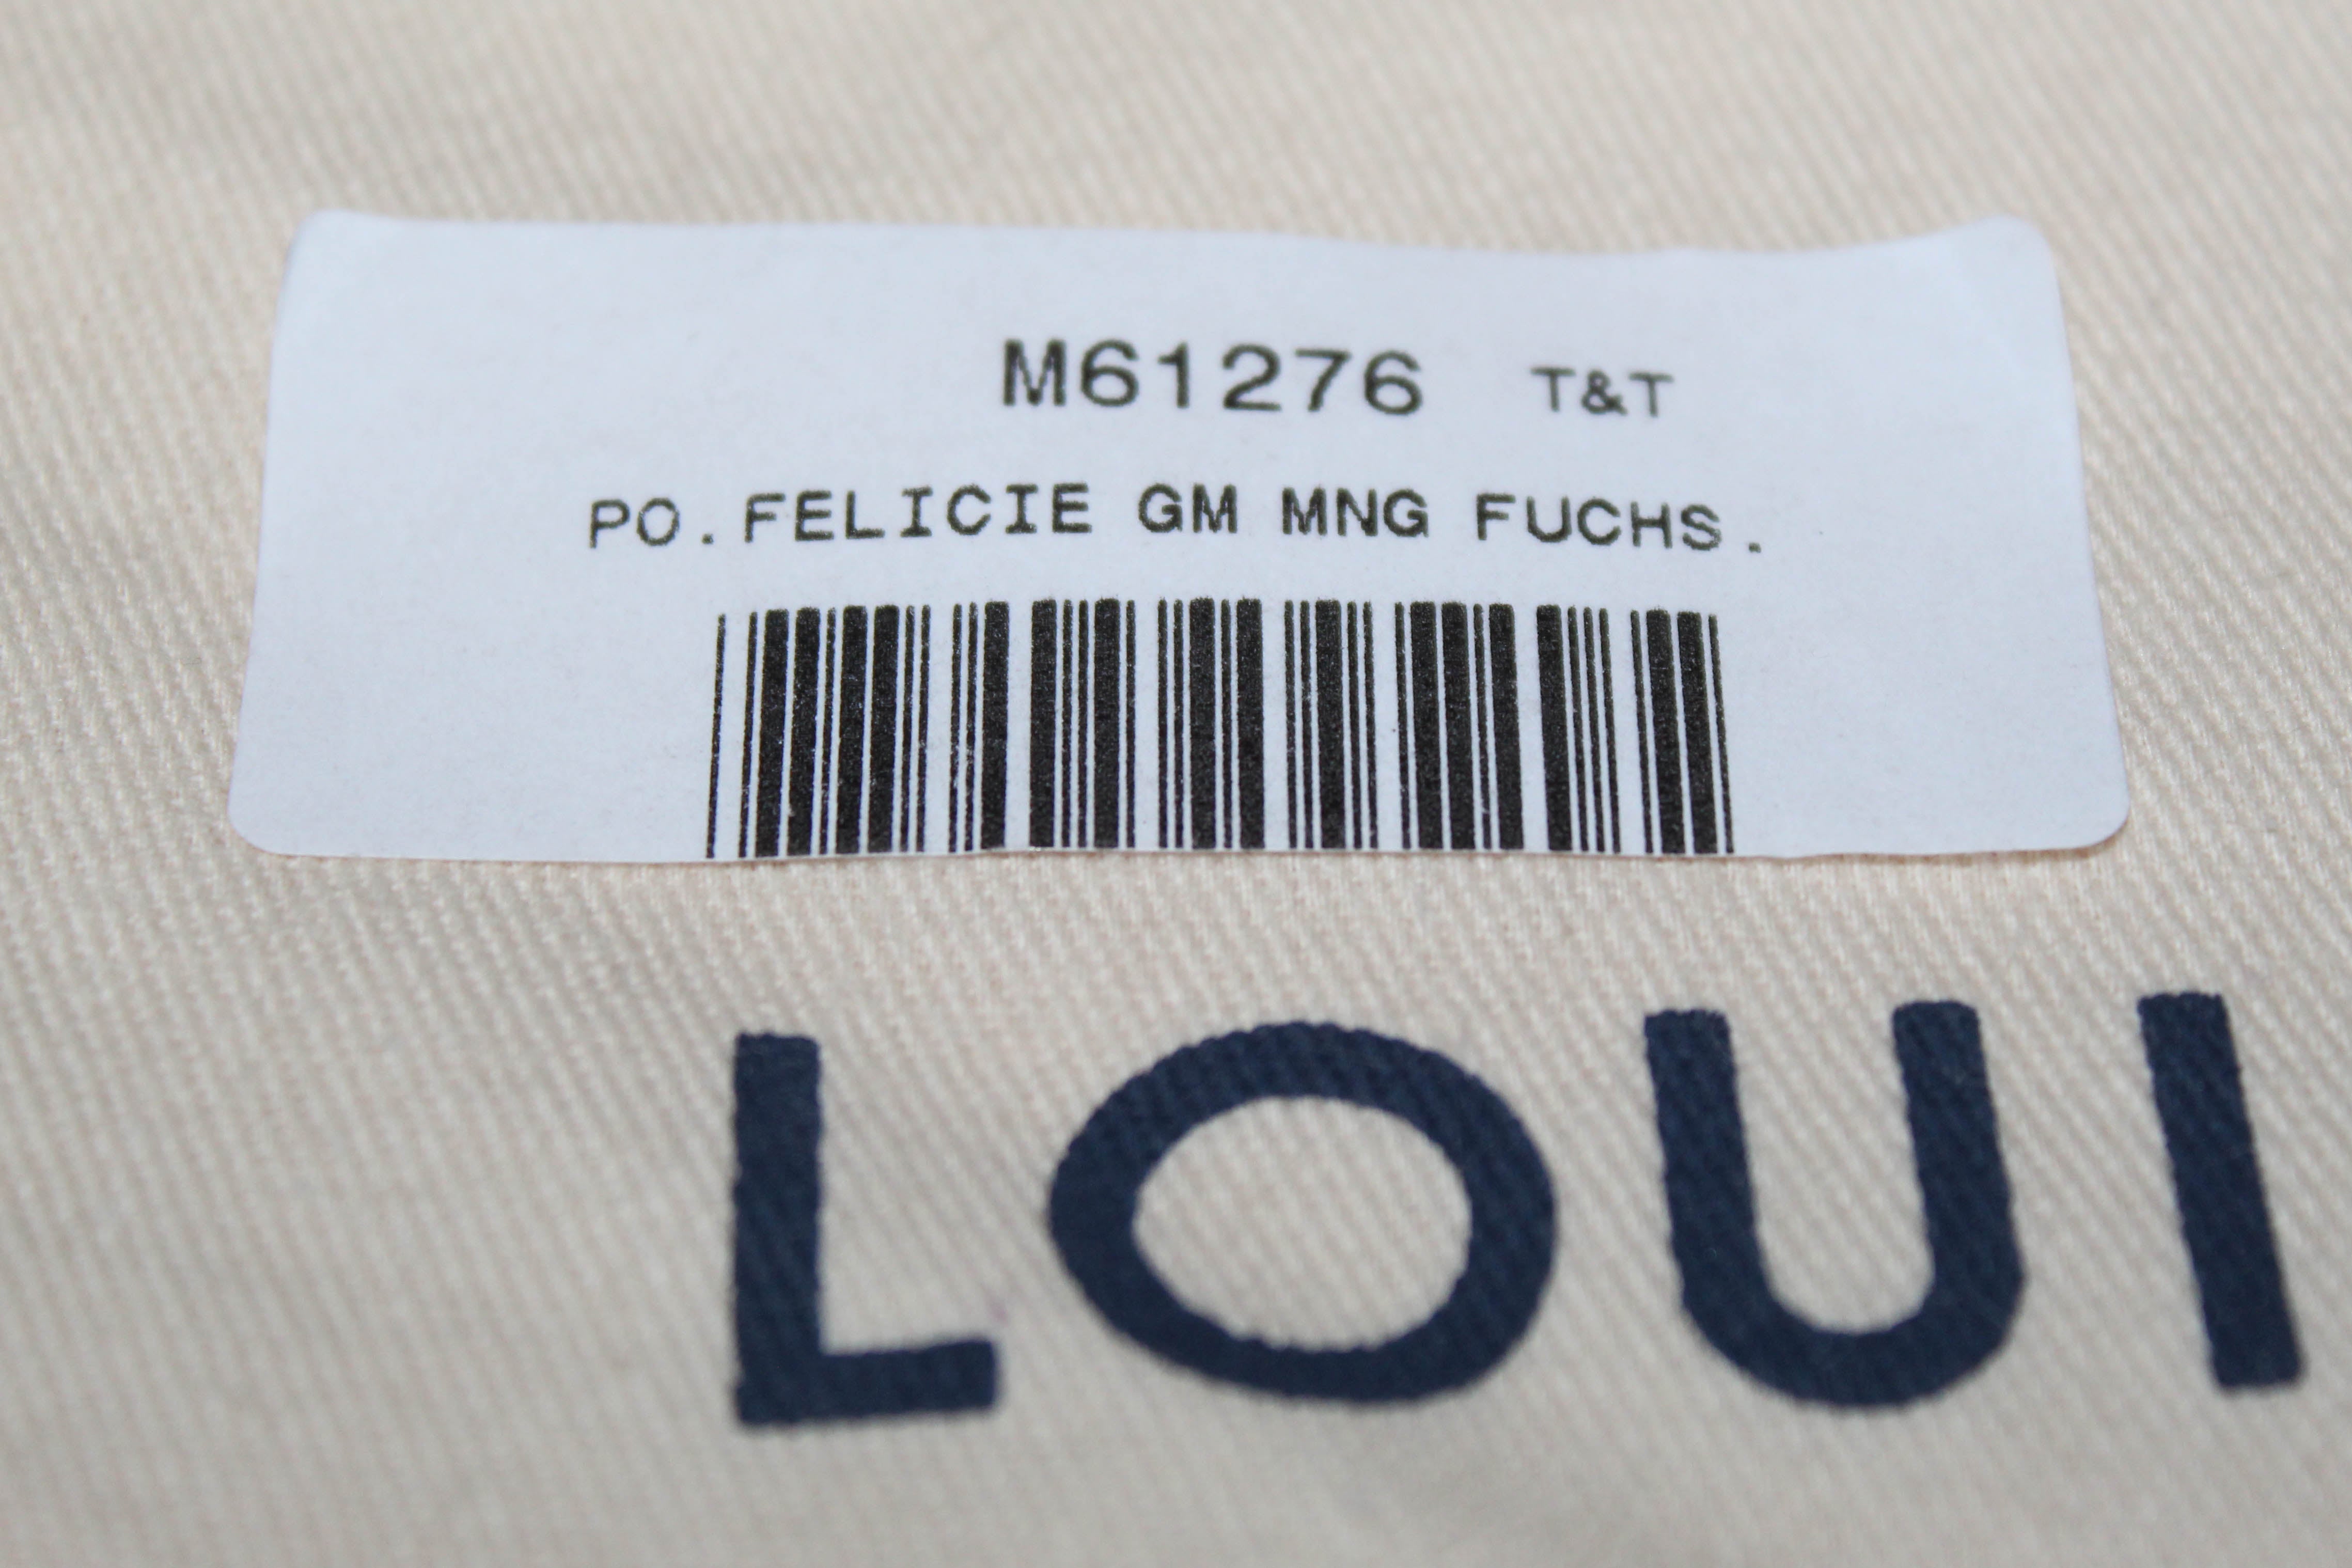 Authentic New Louis Vuitton Classic Monogram Felicie Pochette Bag – Paris  Station Shop